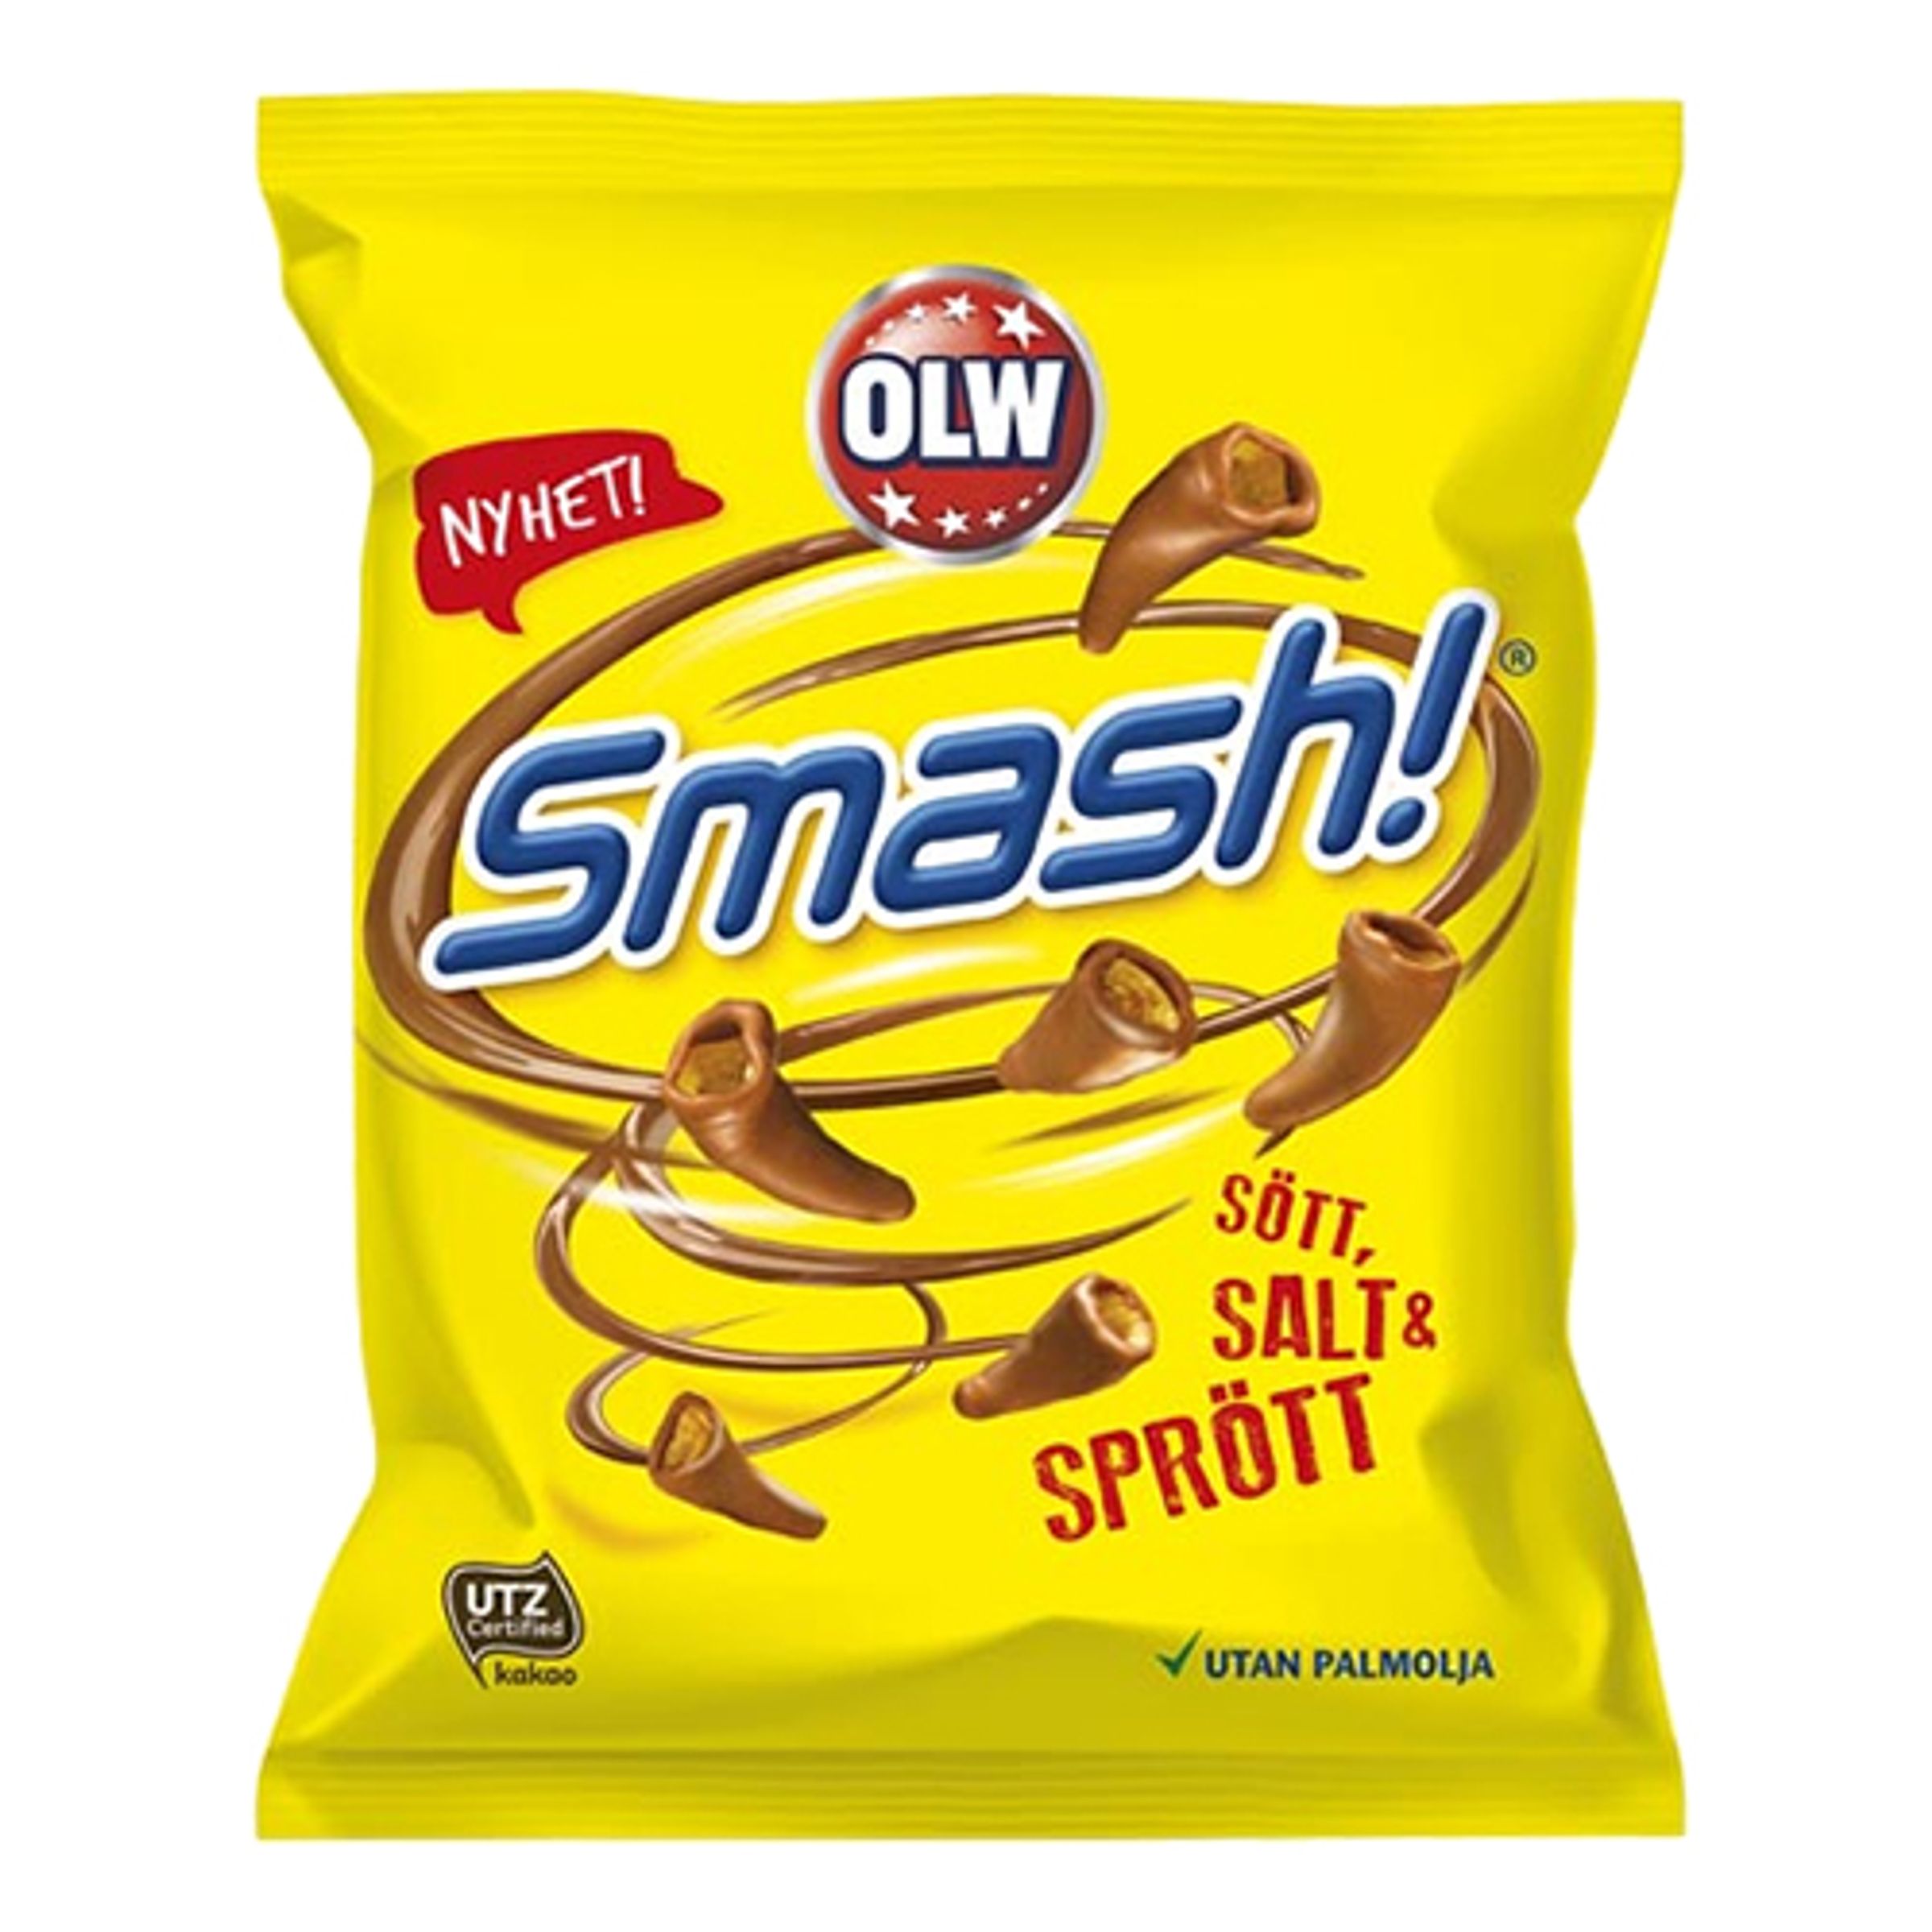 OLW Smash Påse - 100 gram